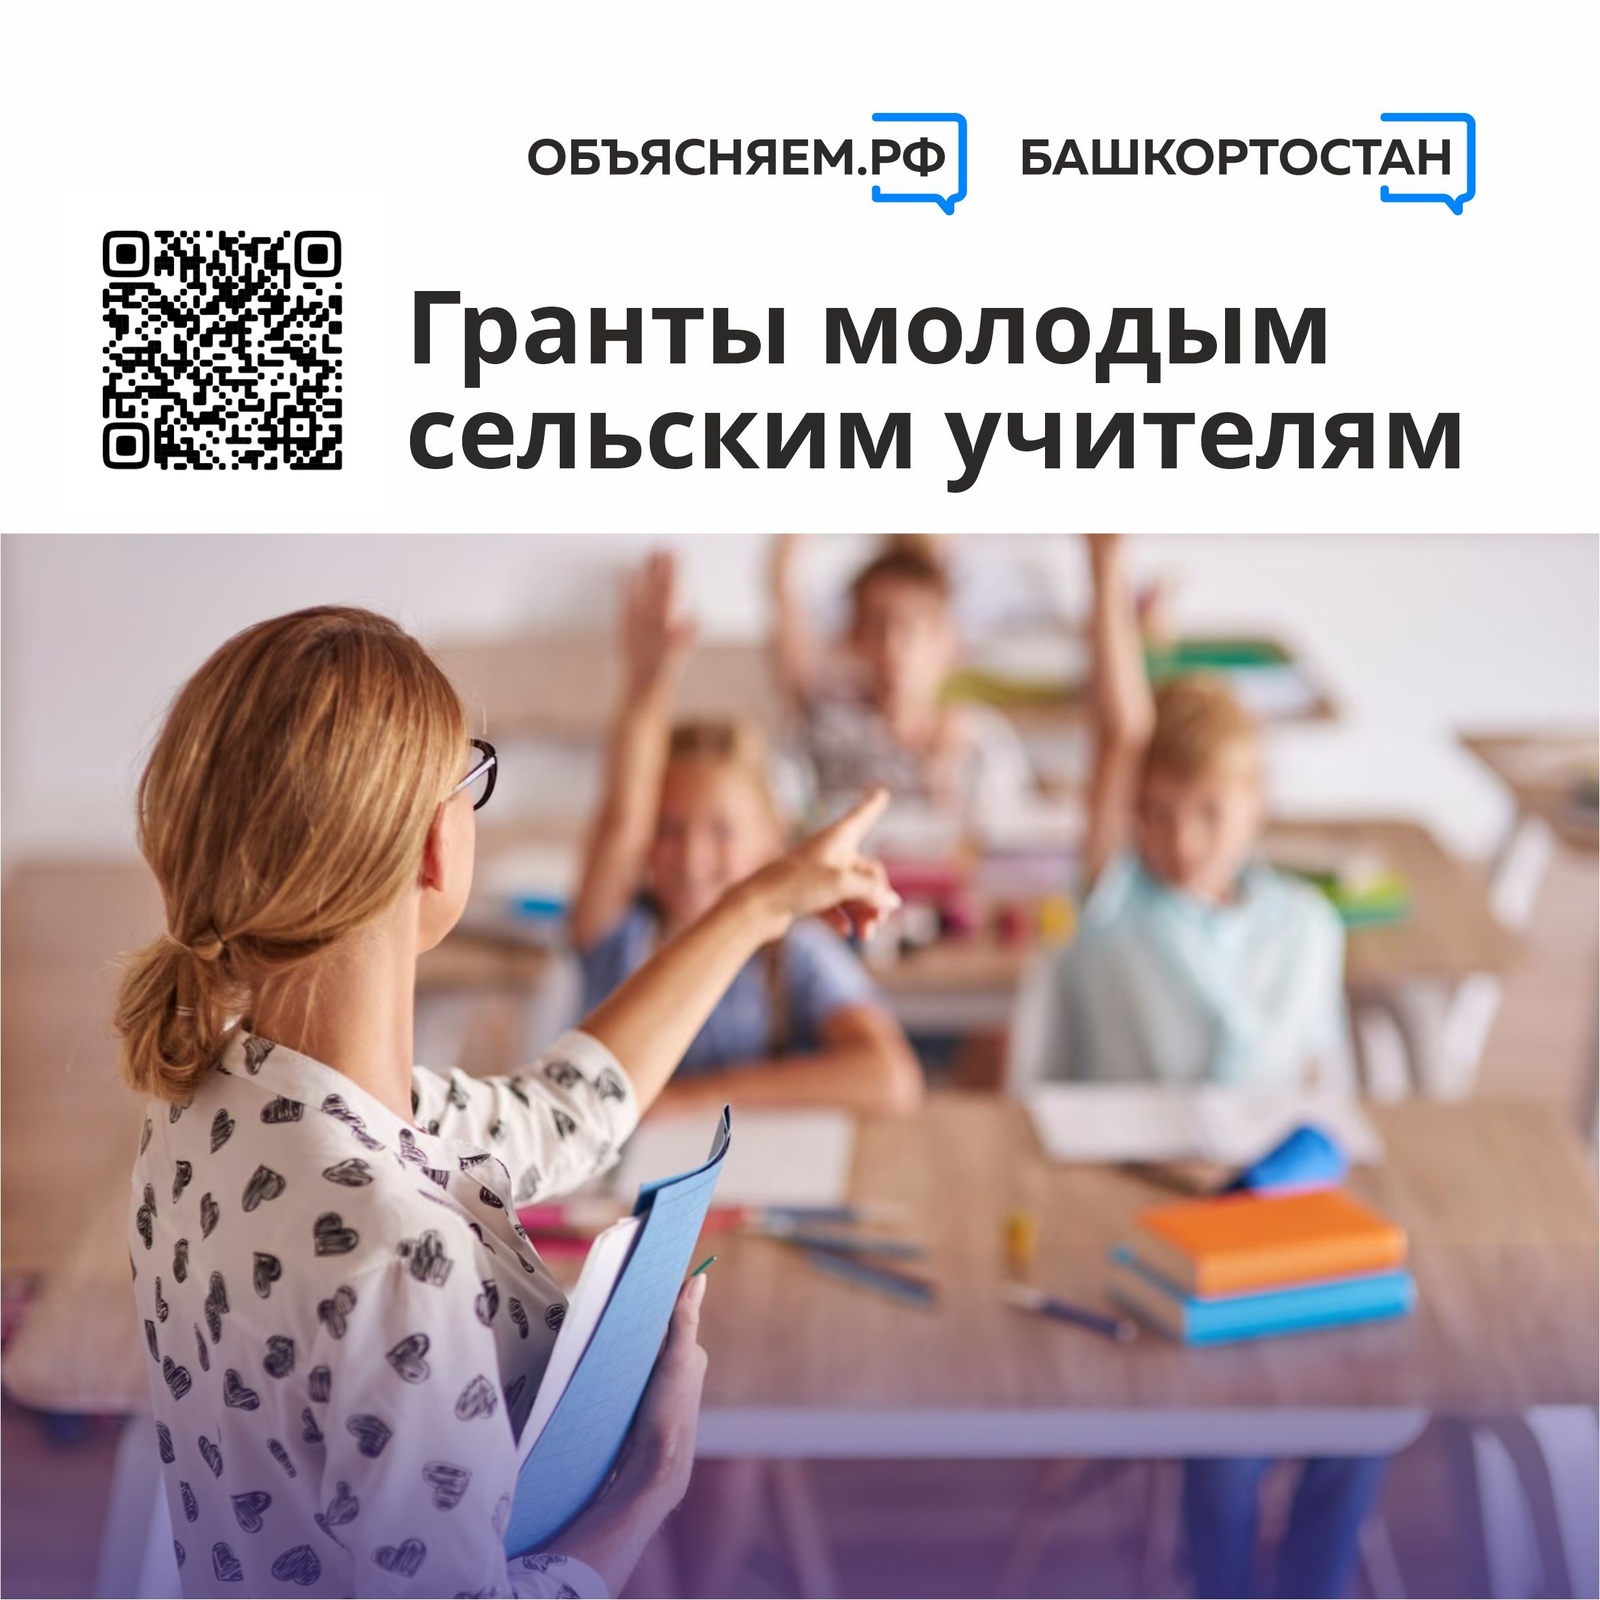 В Башкортостане сельские педагоги могут подавать заявки на гранты